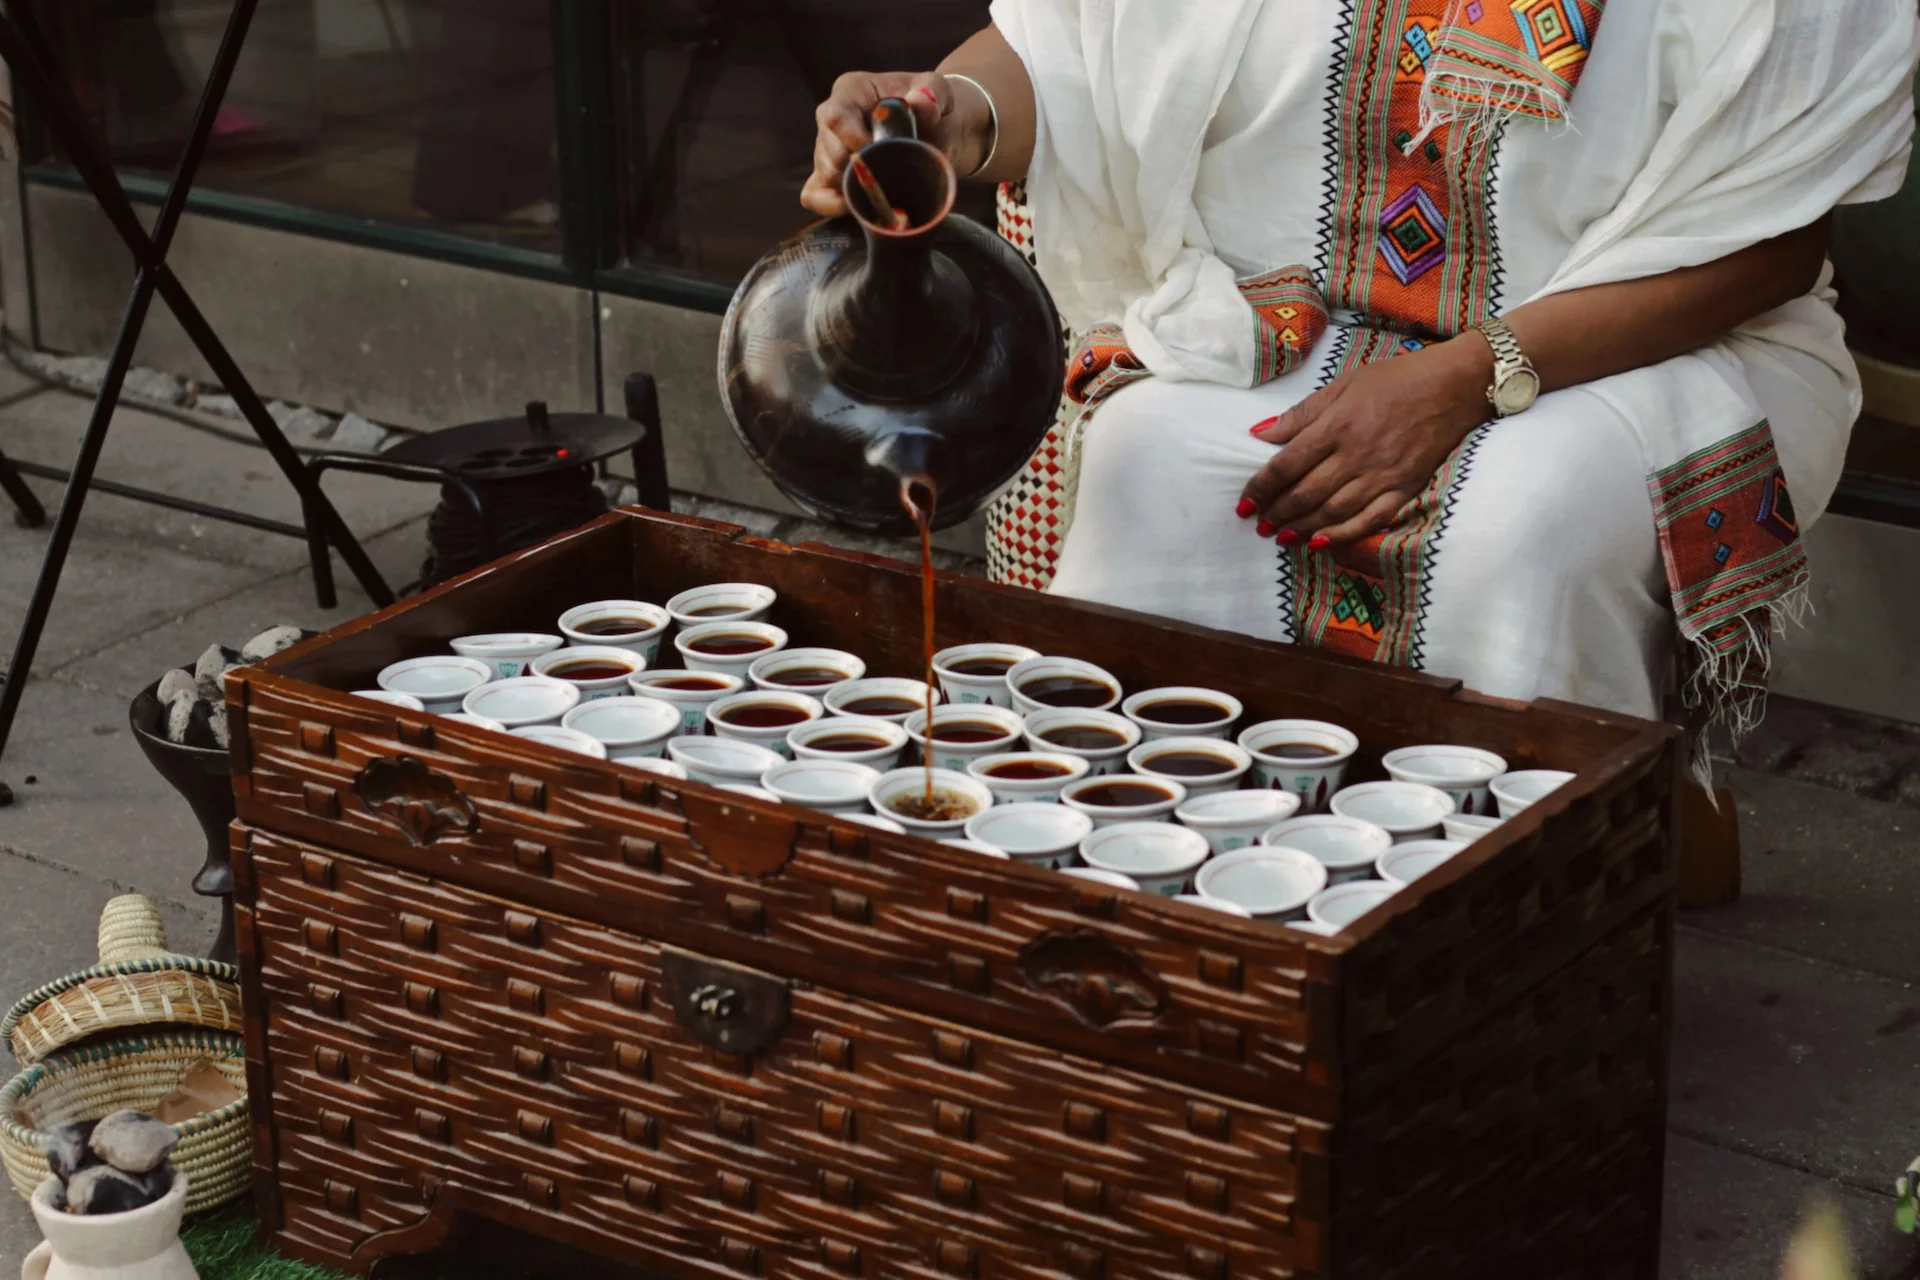 The origin of coffee: Ethiopia’s rich brew tradition